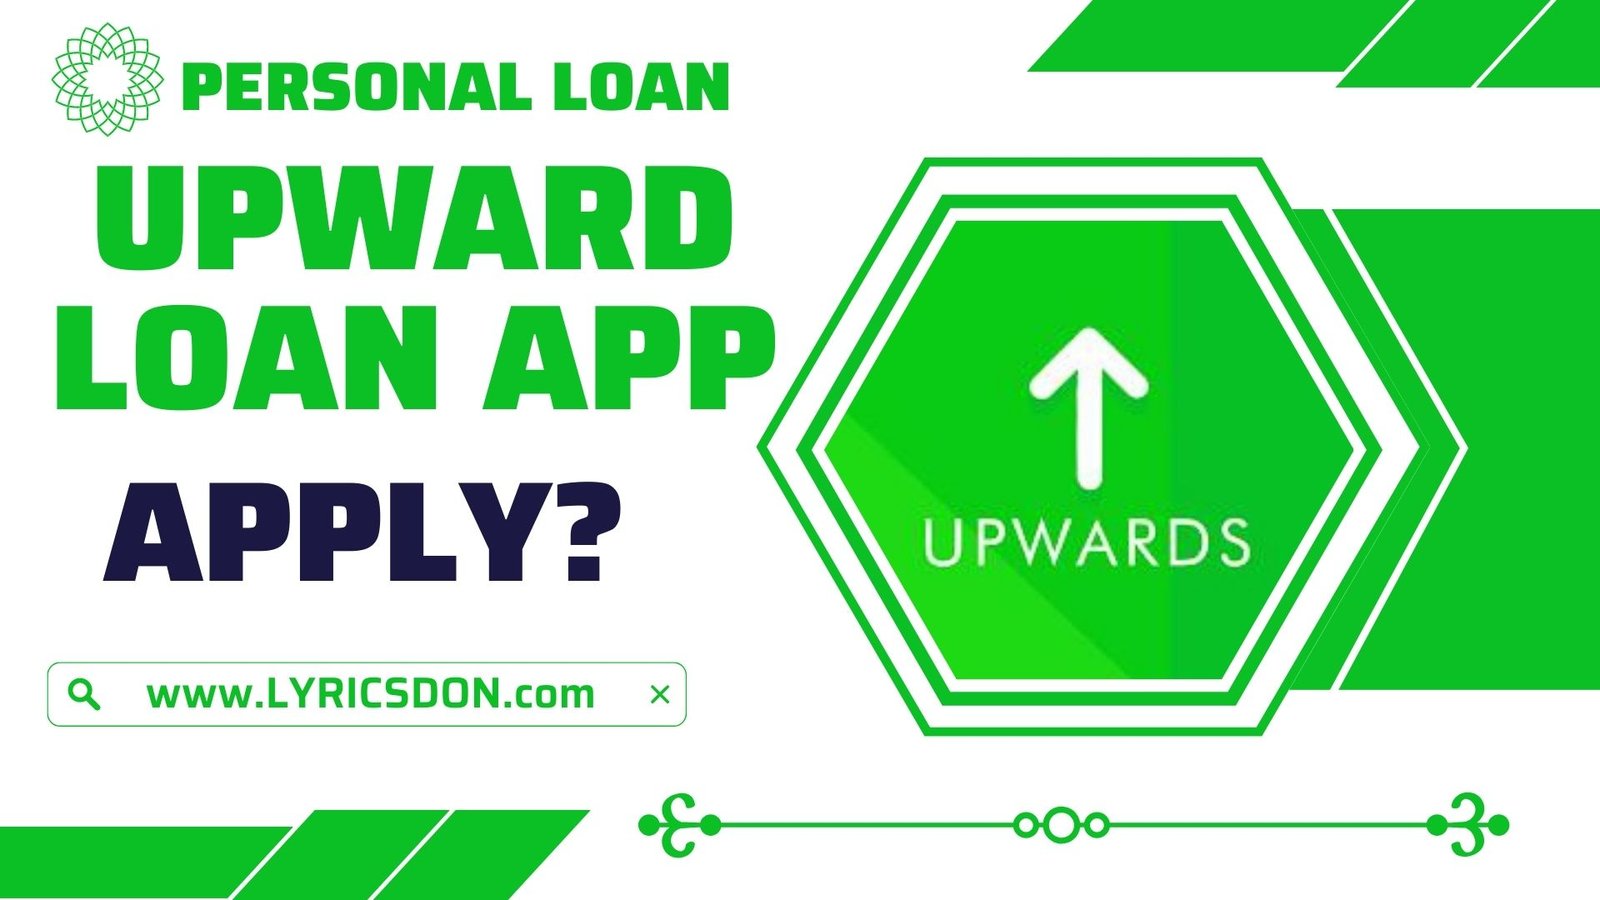 Upwards Loan App से लोन कैसे लें?